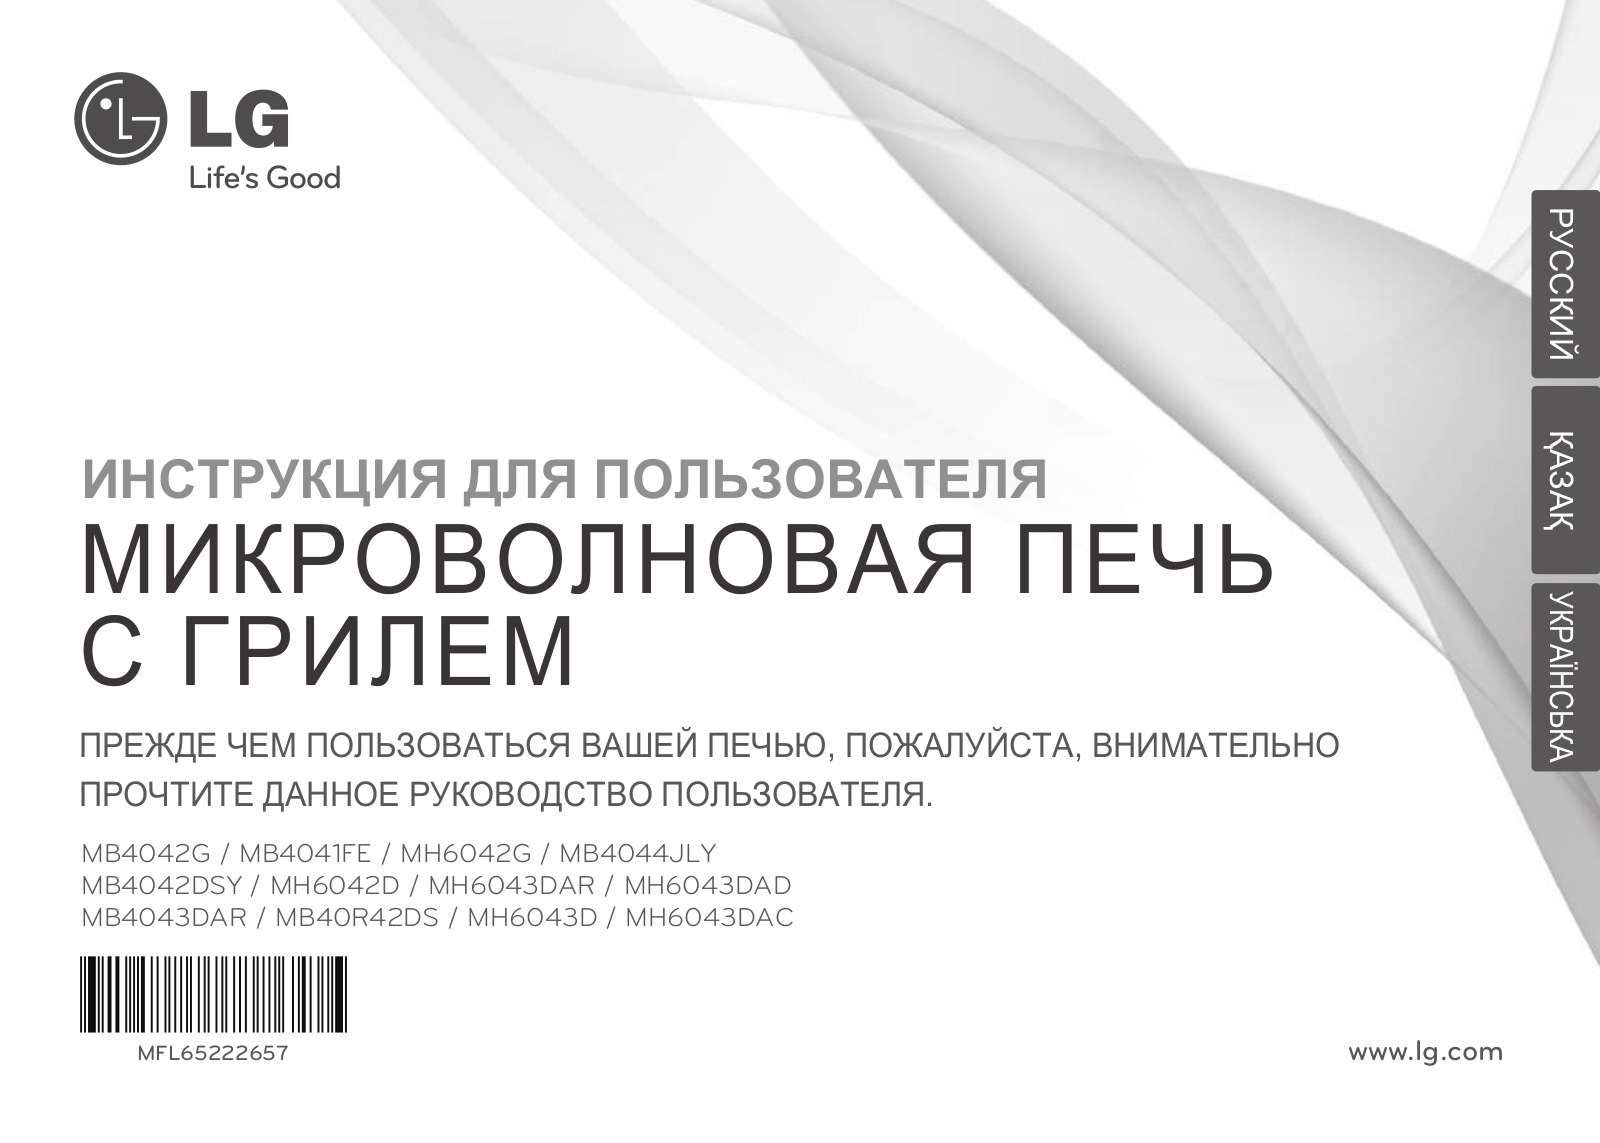 LG MH-6043DAD User Manual